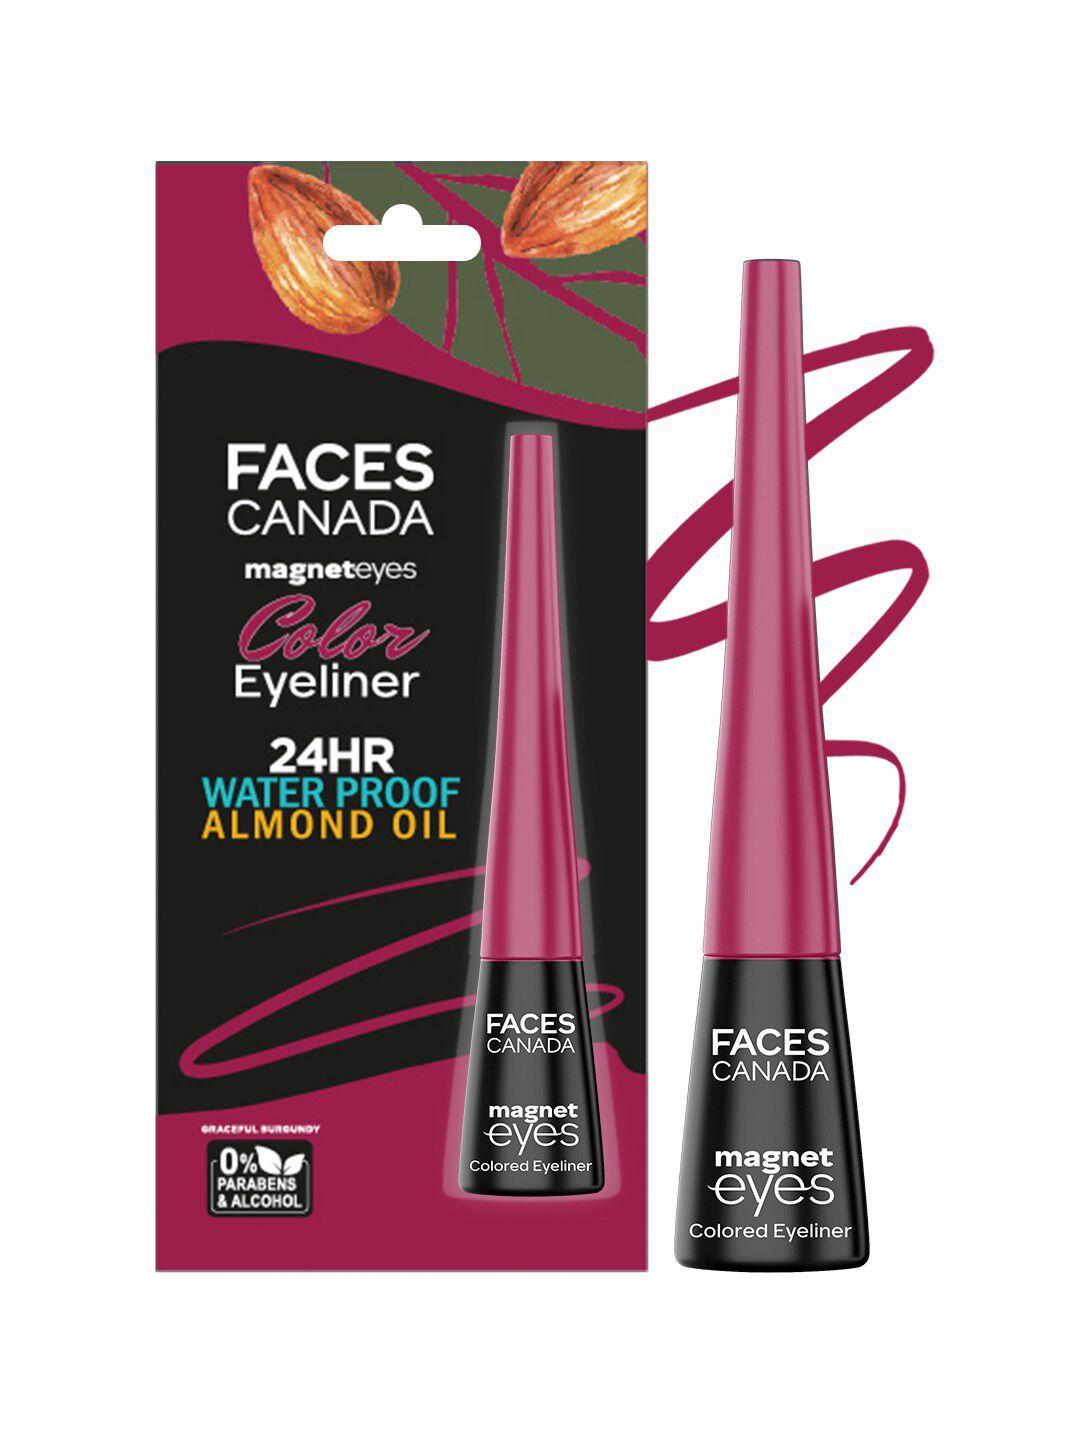 faces canada magneteyes 24hr waterproof liquid colour eyeliner 4ml - graceful burgundy 05